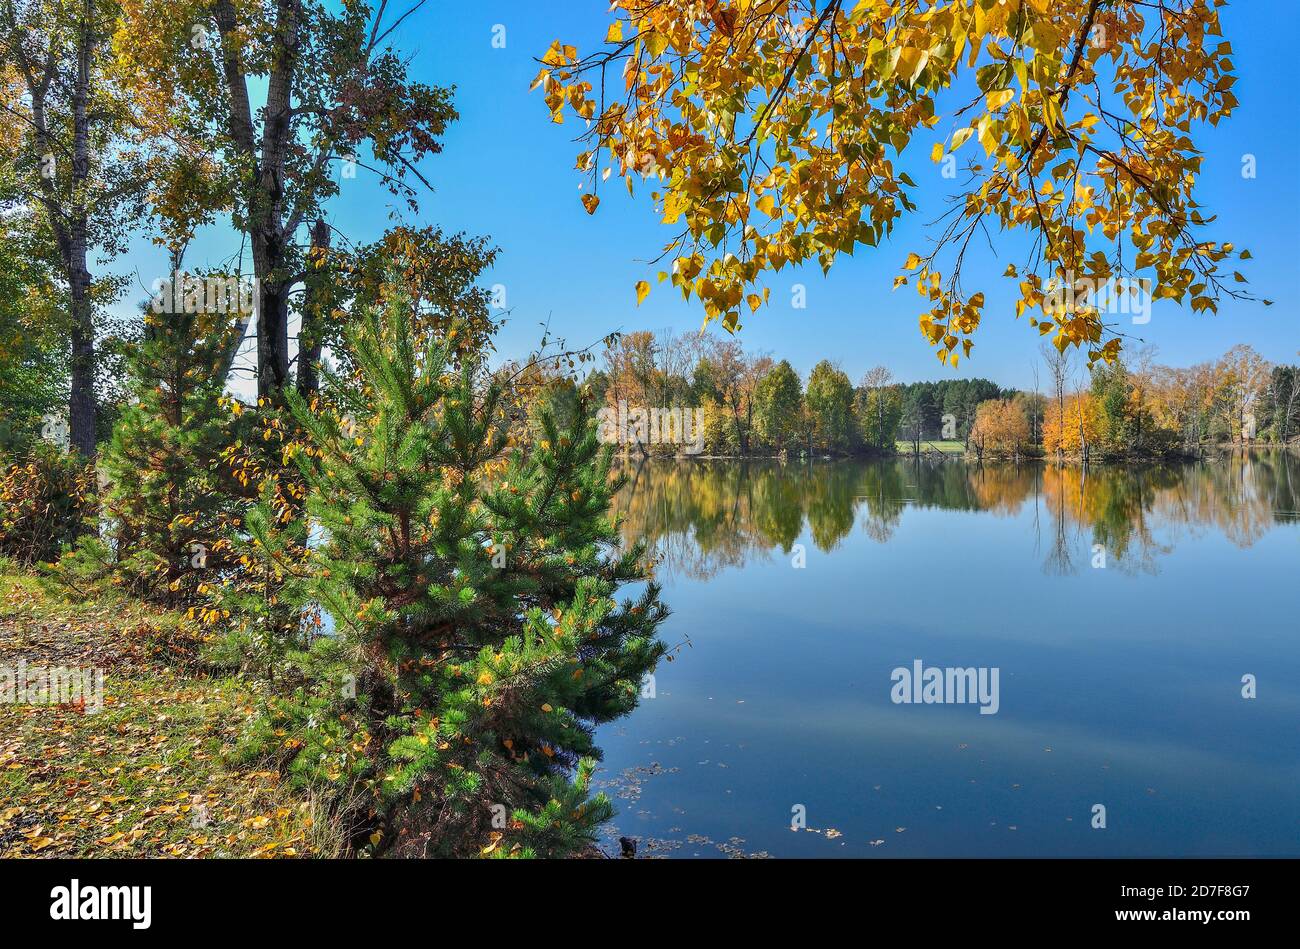 Feuillage doré d'arbres d'automne et de spruces verts autour de la lac reflété dans l'eau bleue - paysage pittoresque d'automne à temps chaud et ensoleillé de septembre Banque D'Images